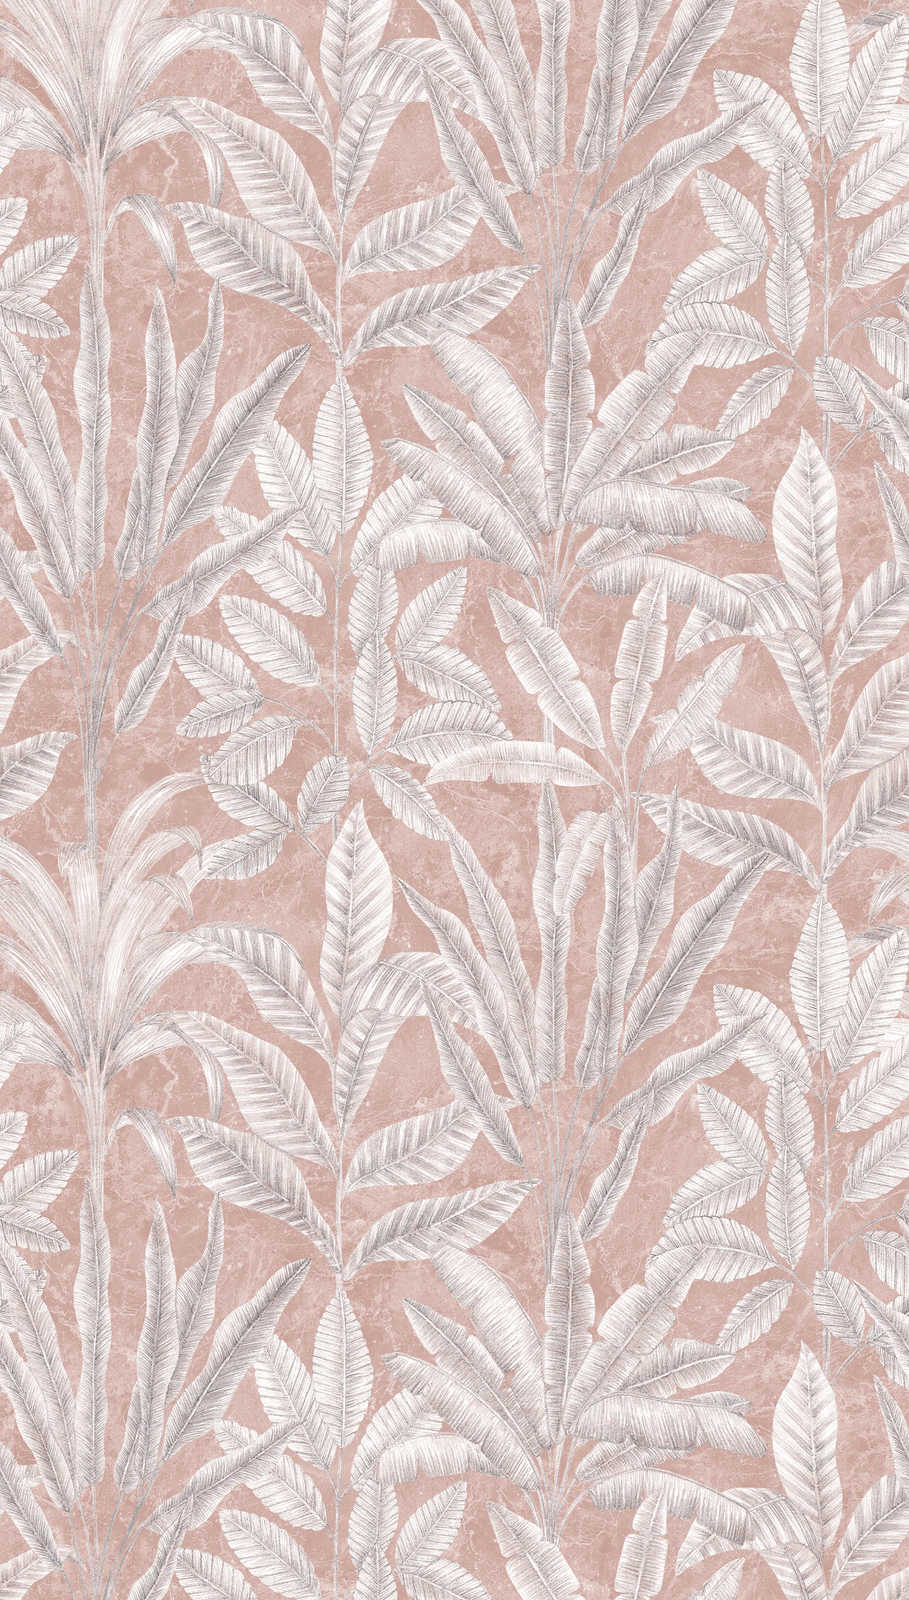             Vliestapete mit großen Blättern in hellen Farben – Rosa, Grau, Weiß
        